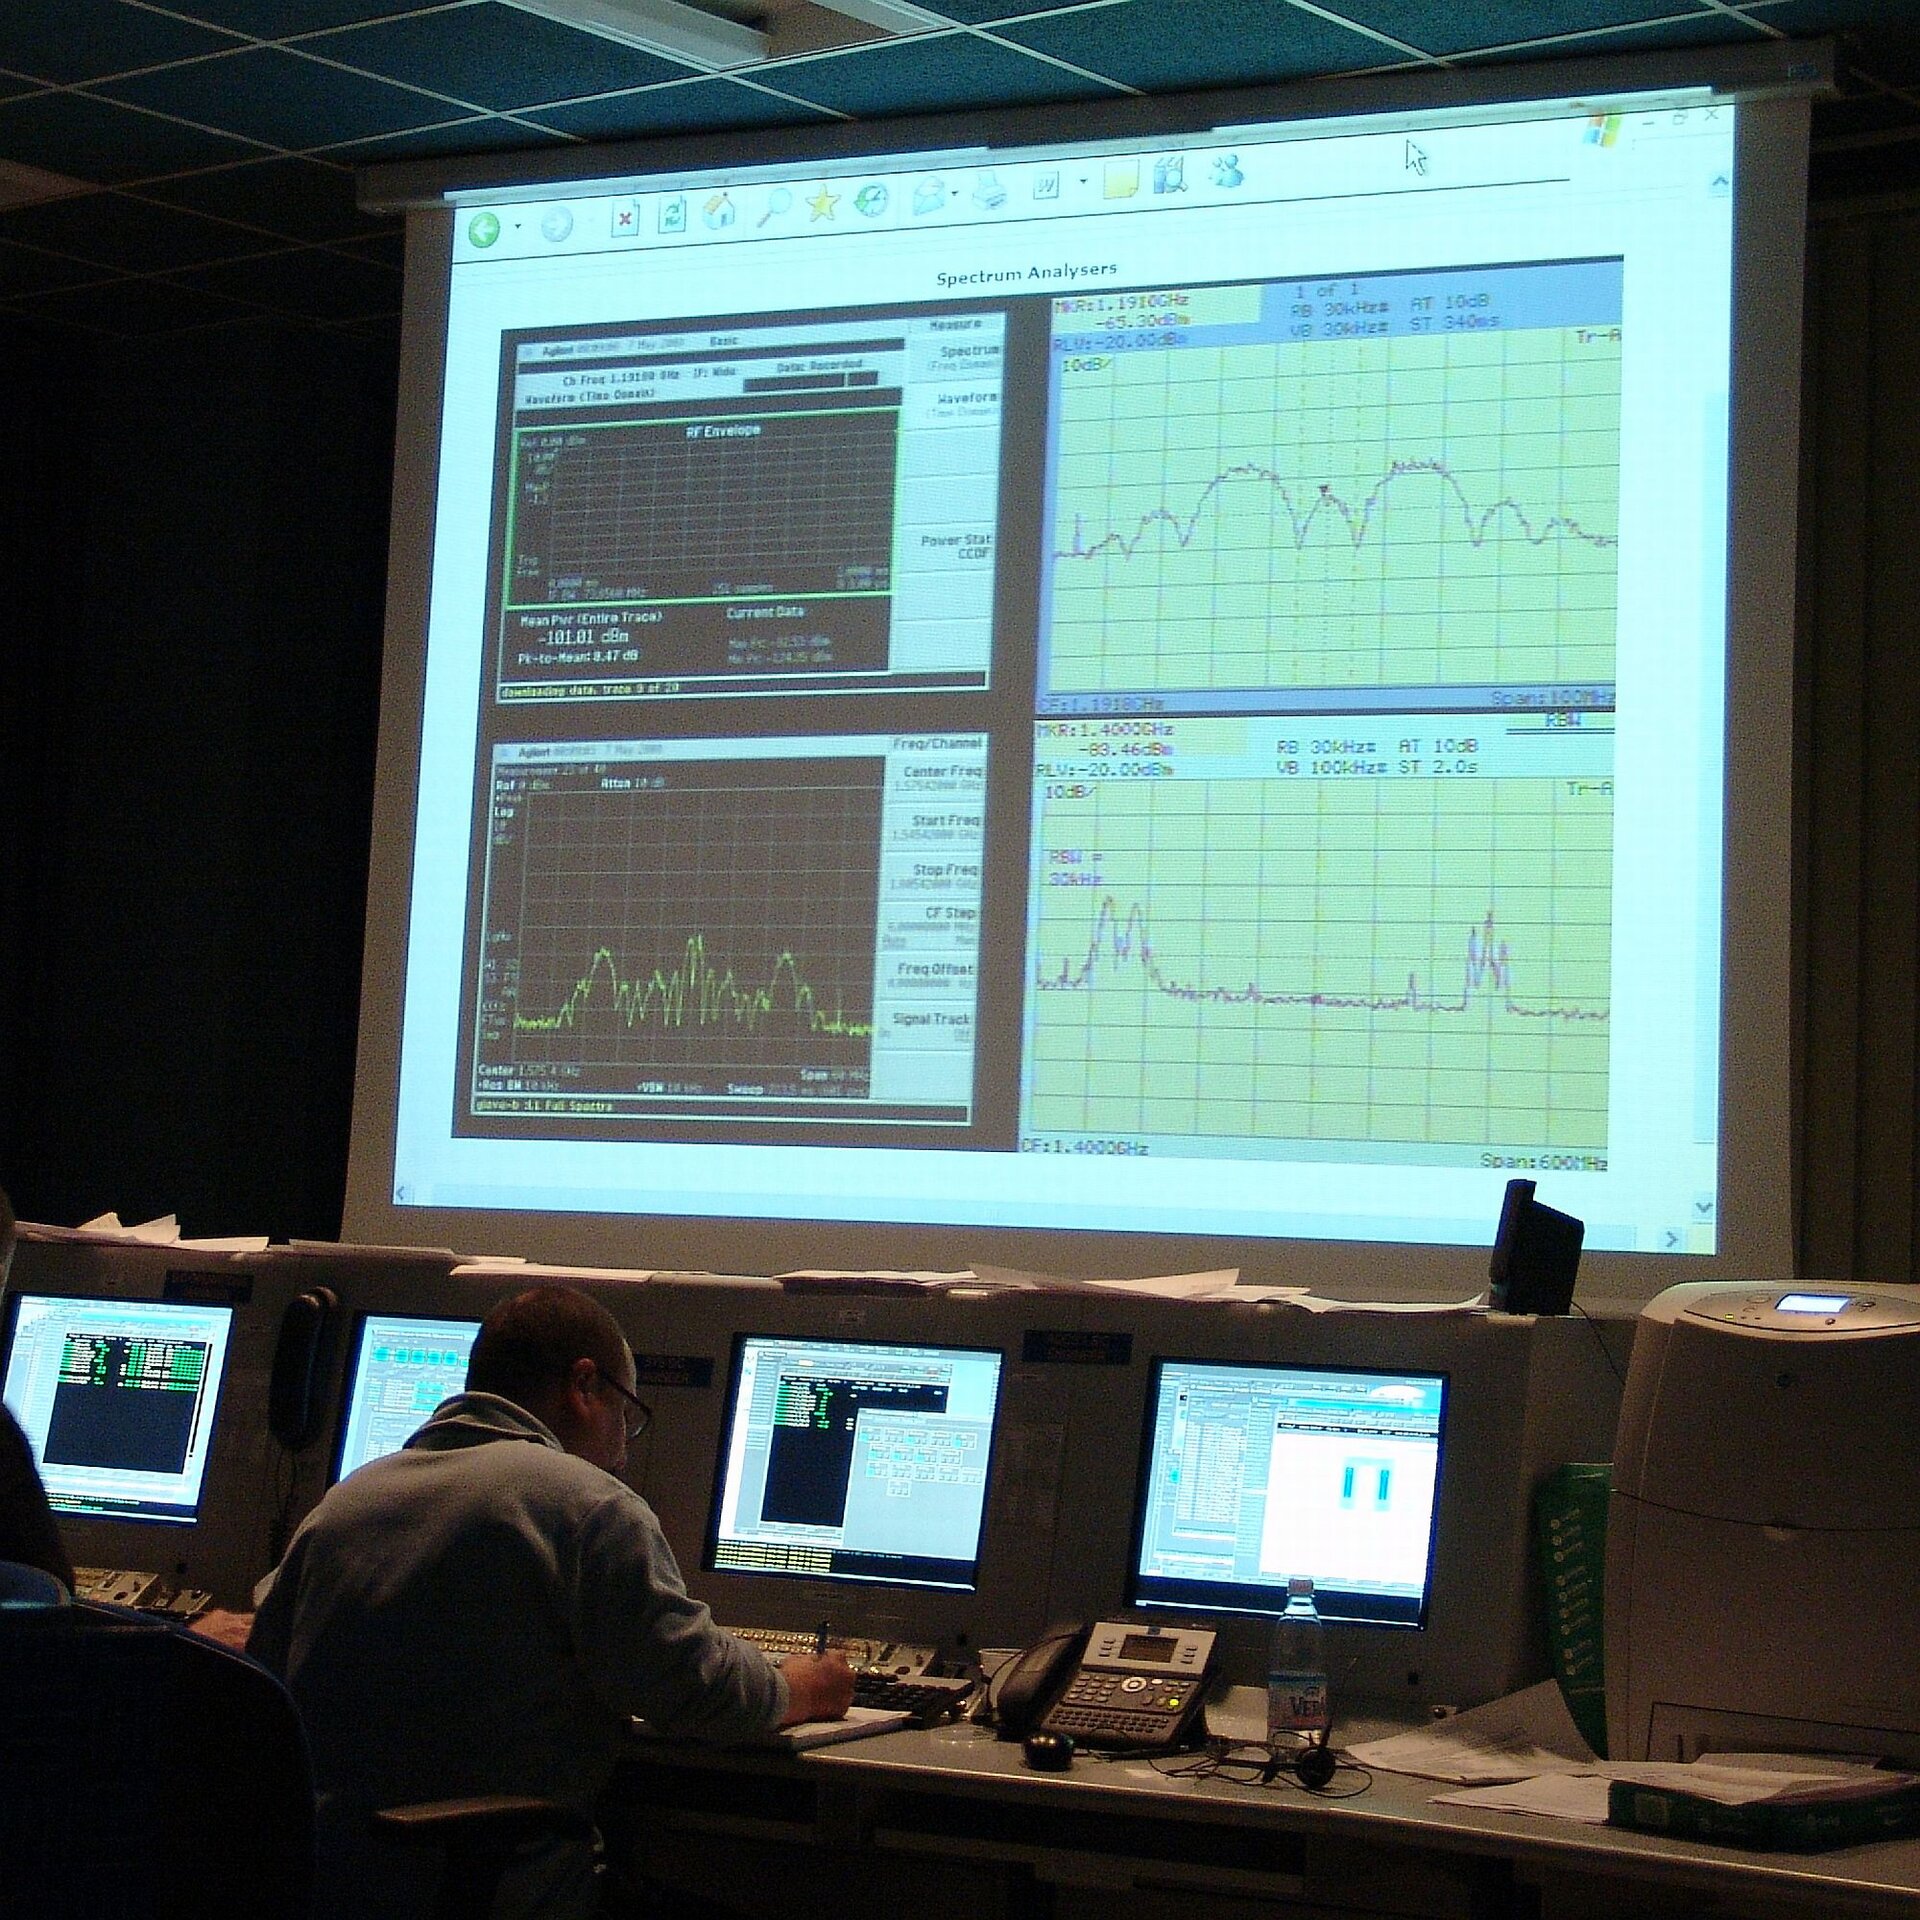 De første signaler fra GIOVE-B vises i kontrolrummet.